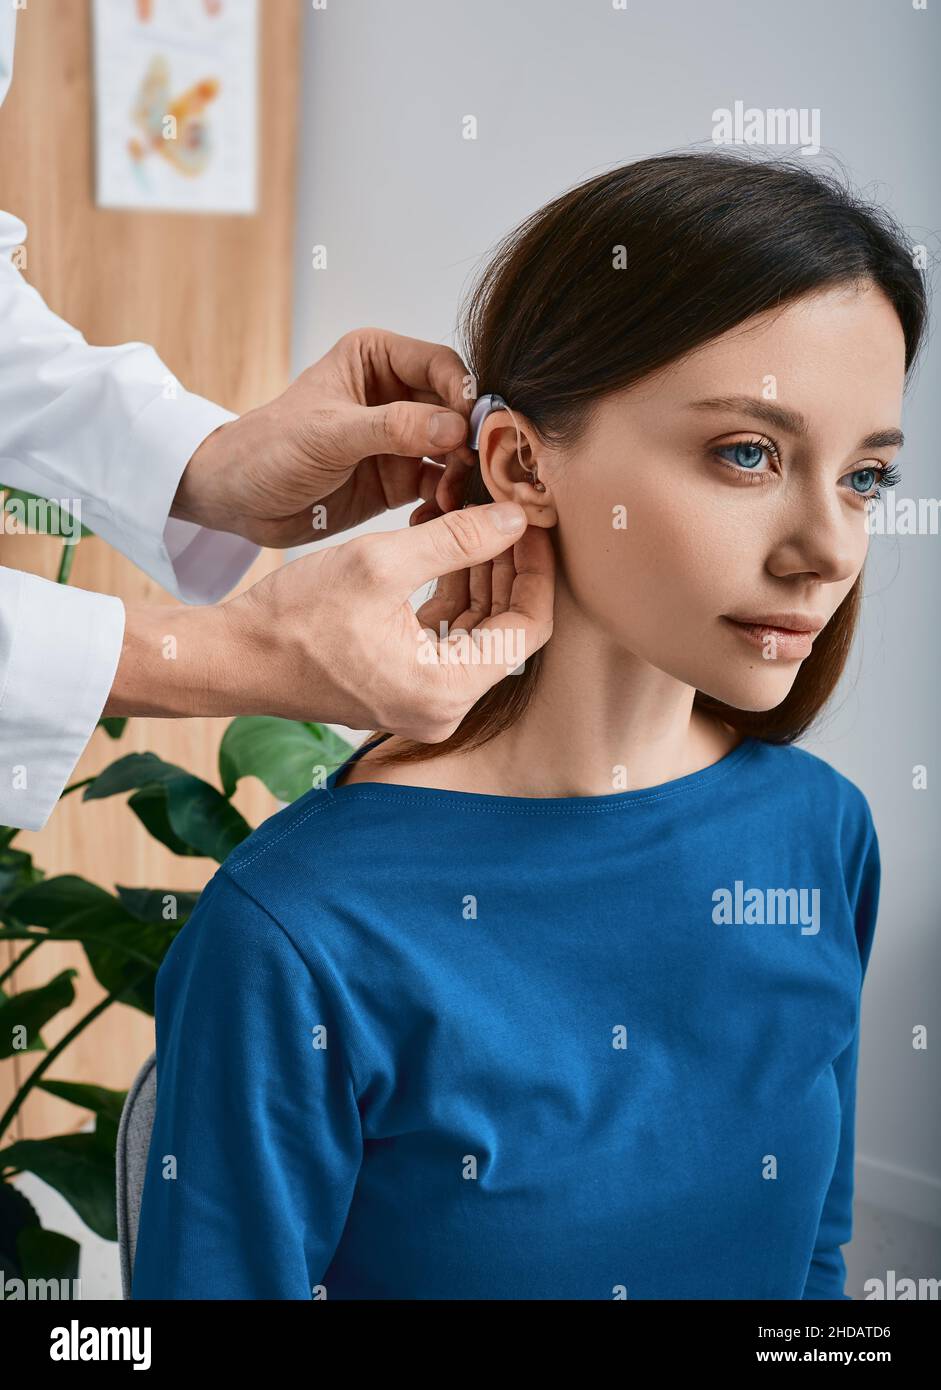 Femme caucasienne pendant l'installation prothèse auditive dans son oreille par son audiologiste, gros plan.Traitement auditif pour les personnes malentendantes Banque D'Images